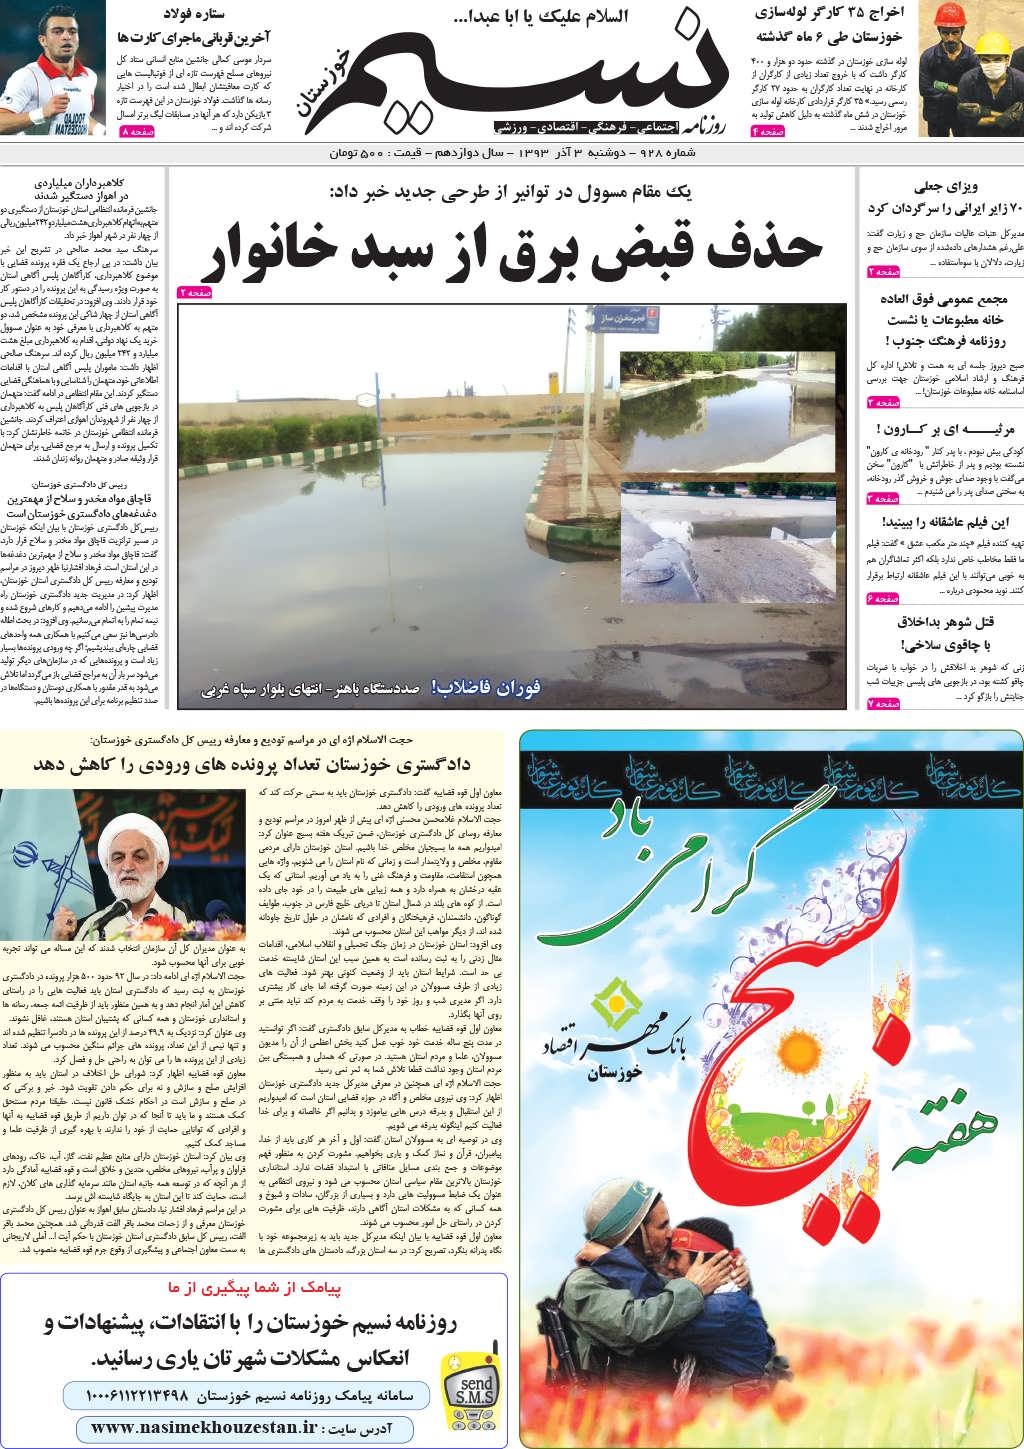 صفحه اصلی روزنامه نسیم شماره 928 